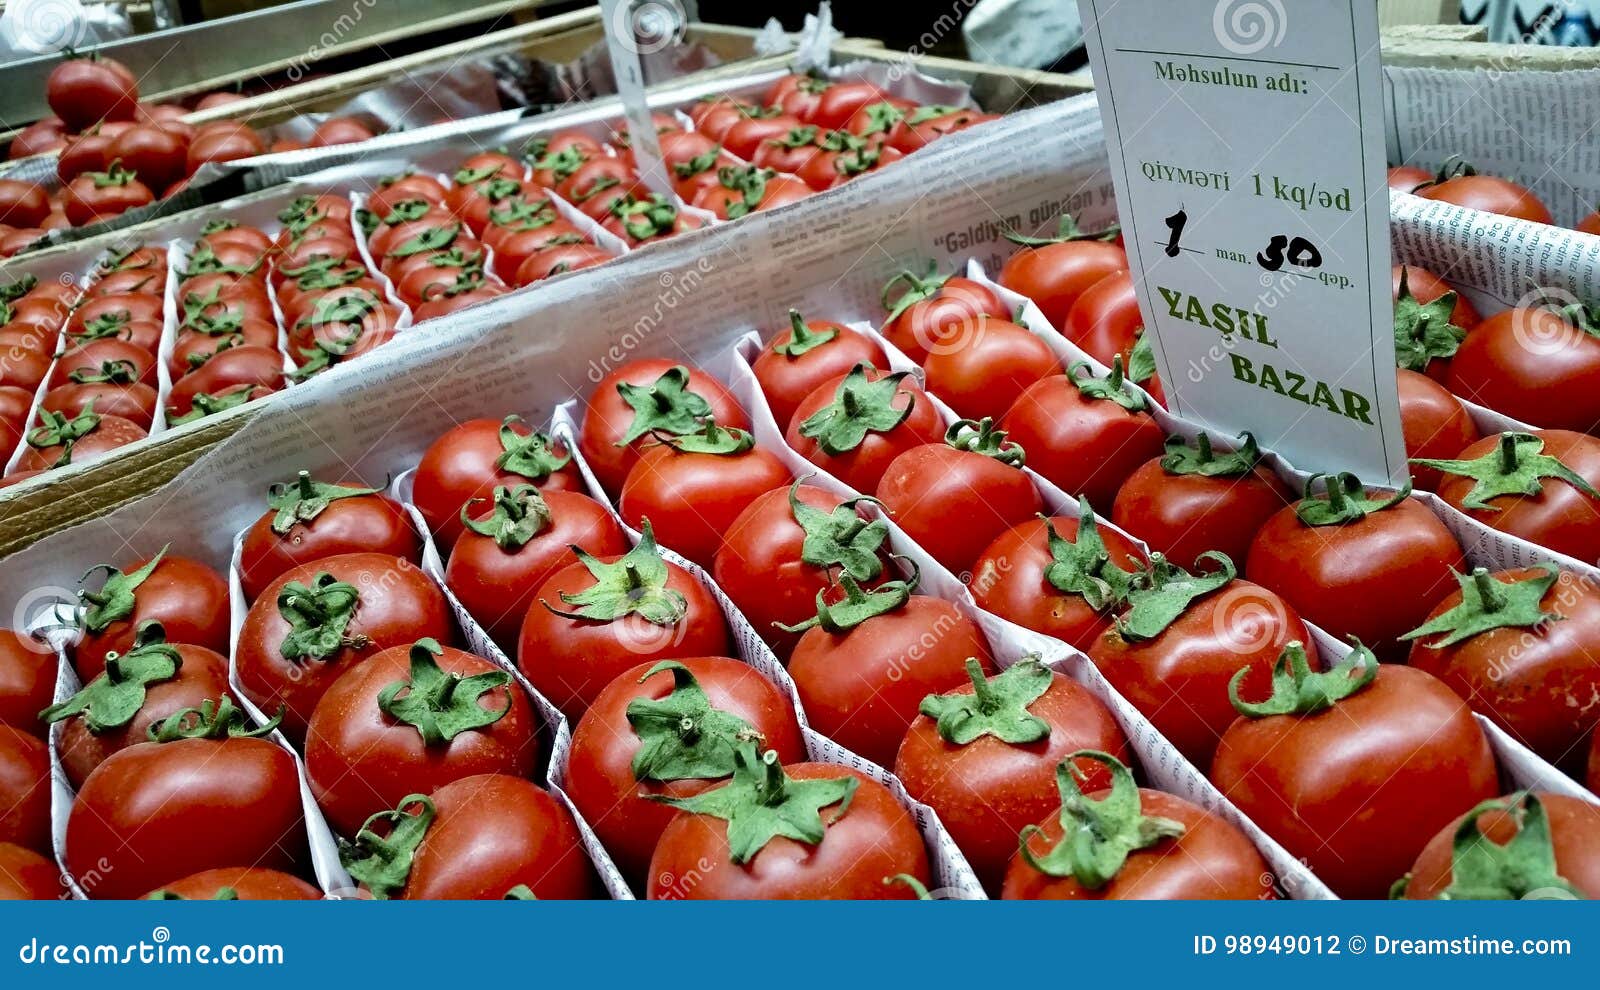 Yasil市场 图库摄影片. 图片 包括有 食物, 新鲜, 秃头, 绿叶, 本质, 出售, 蕃茄, 红色 - 98949012